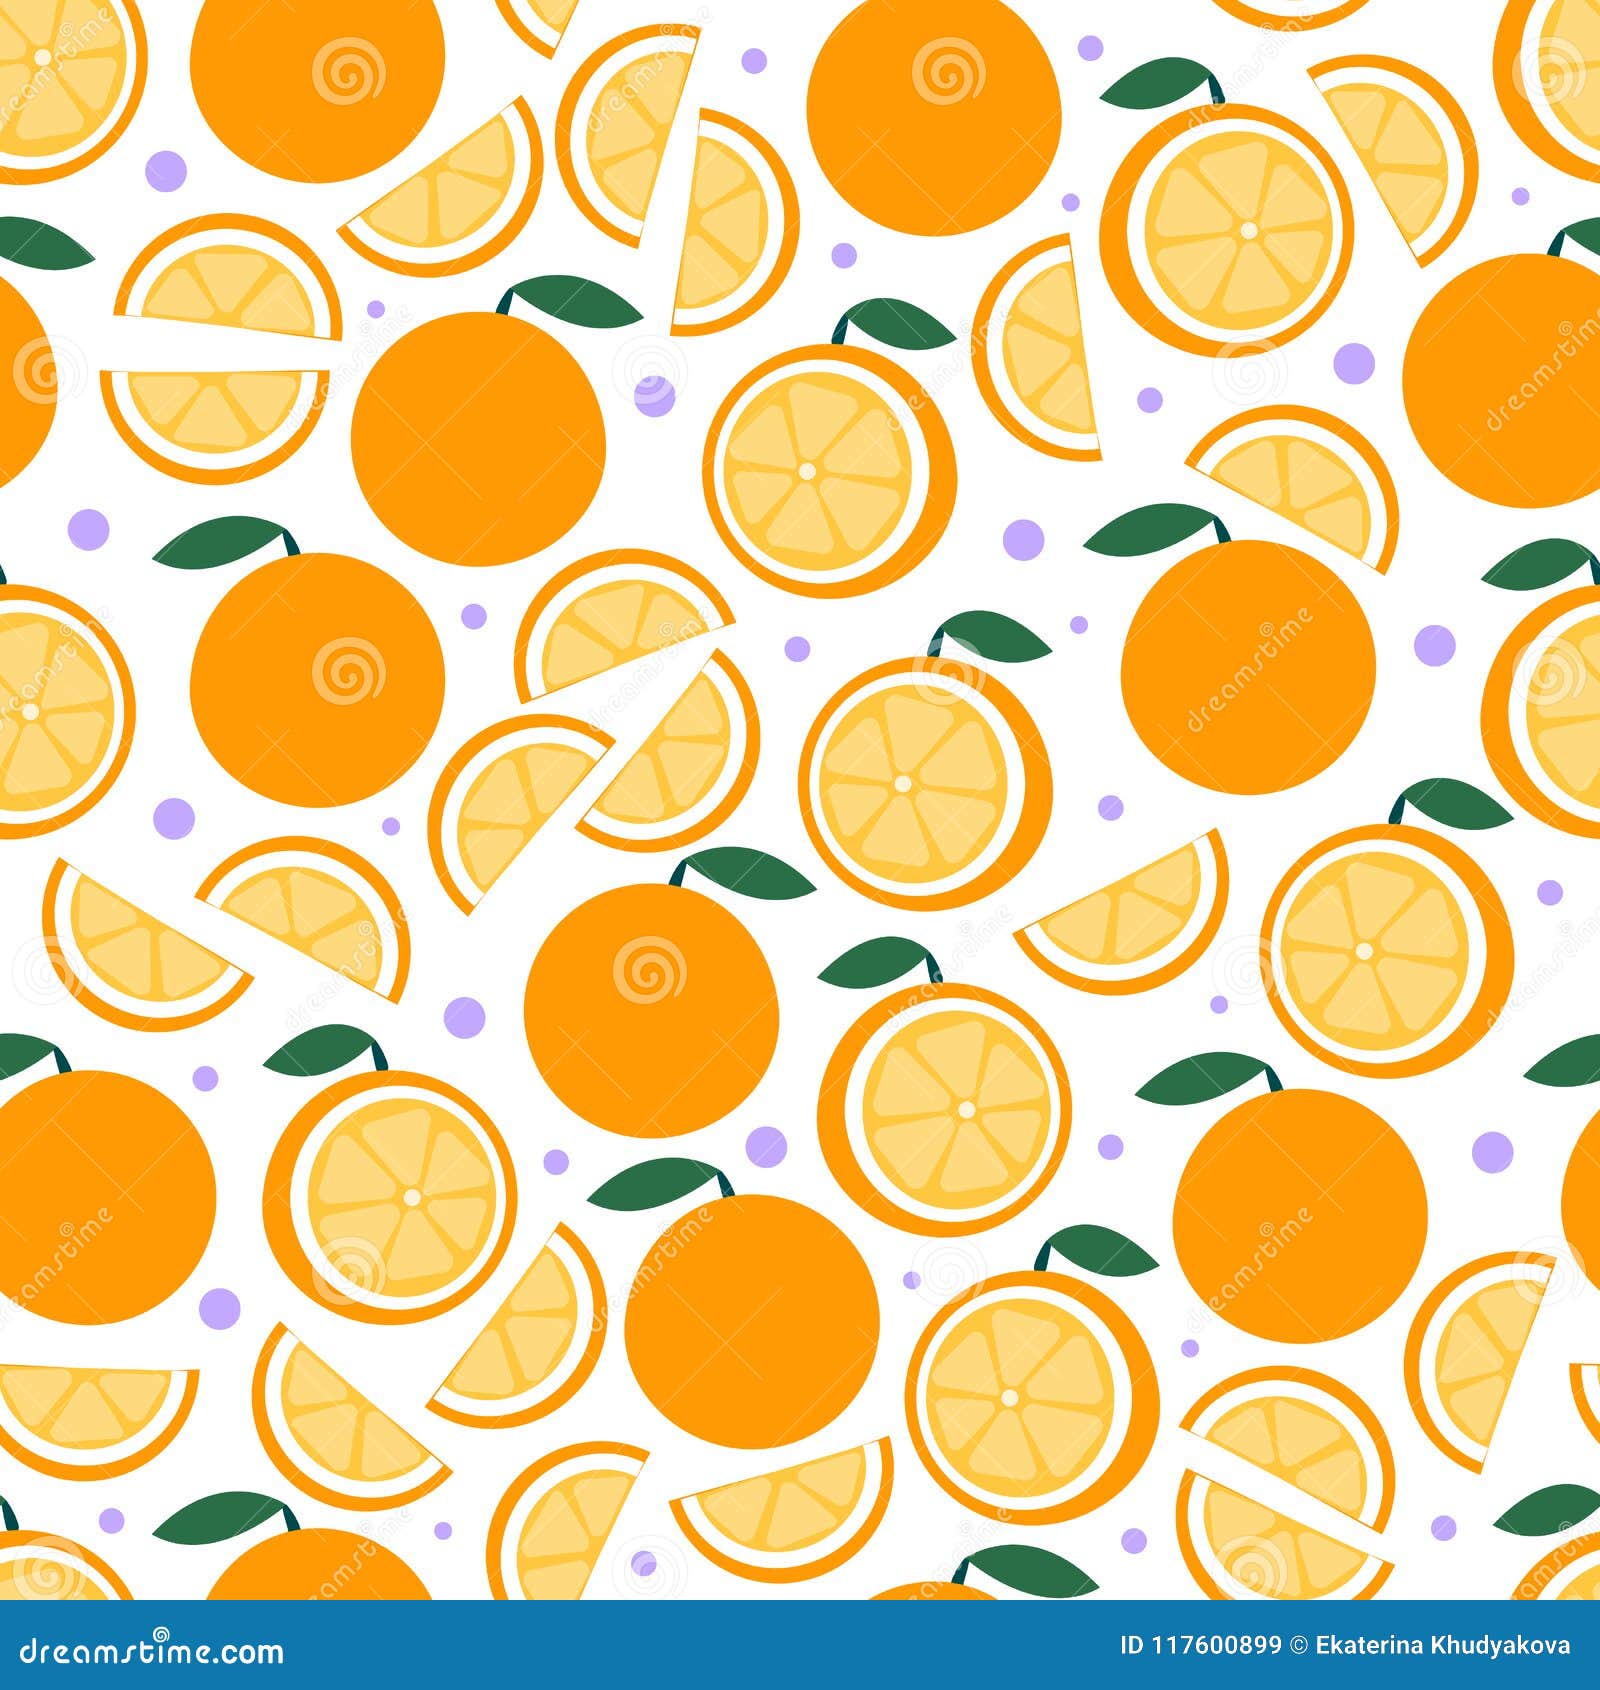 Mẫu trái cam tươi sáng: Trái cam không chỉ tươi và ngon mà nó còn mang lại cho bạn sự tươi tắn và niềm vui trong cuộc sống. Bộ sưu tập mẫu trái cam này không chỉ đưa ra những hình ảnh đẹp mắt mà còn cho bạn thấy được sự tươi mới và sáng tạo của thế giới xung quanh.